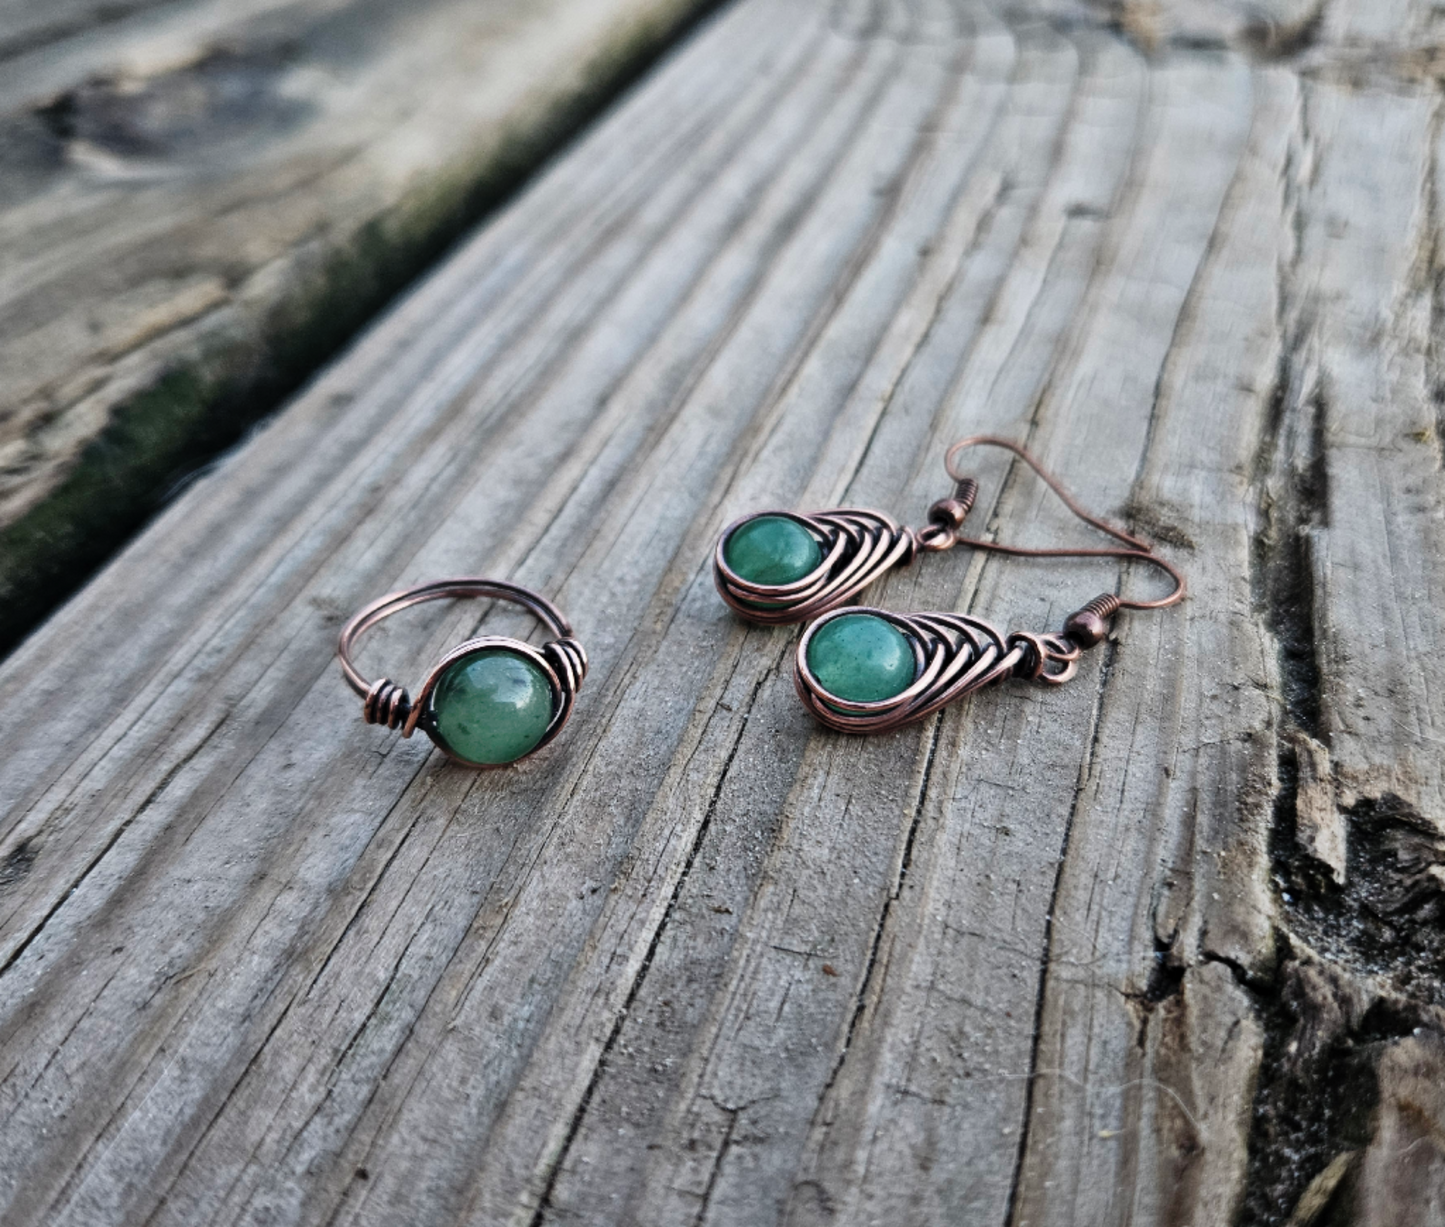 Green aventurine earrings/ring